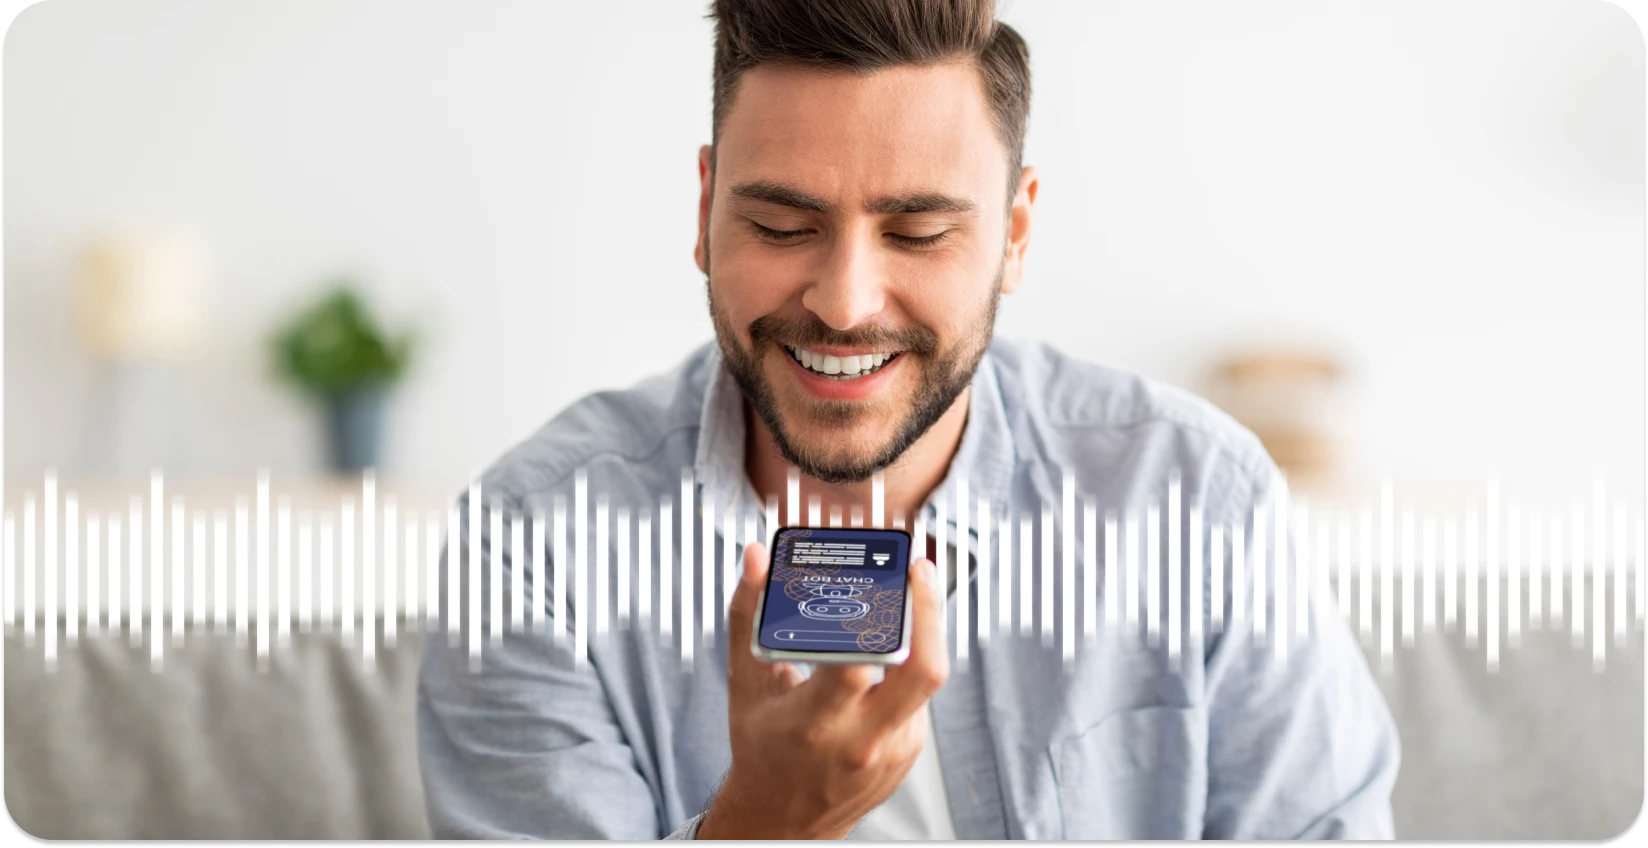 رجل يبتسم أثناء استخدام تطبيق الهاتف الذكي لقص الموجات الصوتية ، وتعزيز تجربة التحرير عبر الإنترنت.